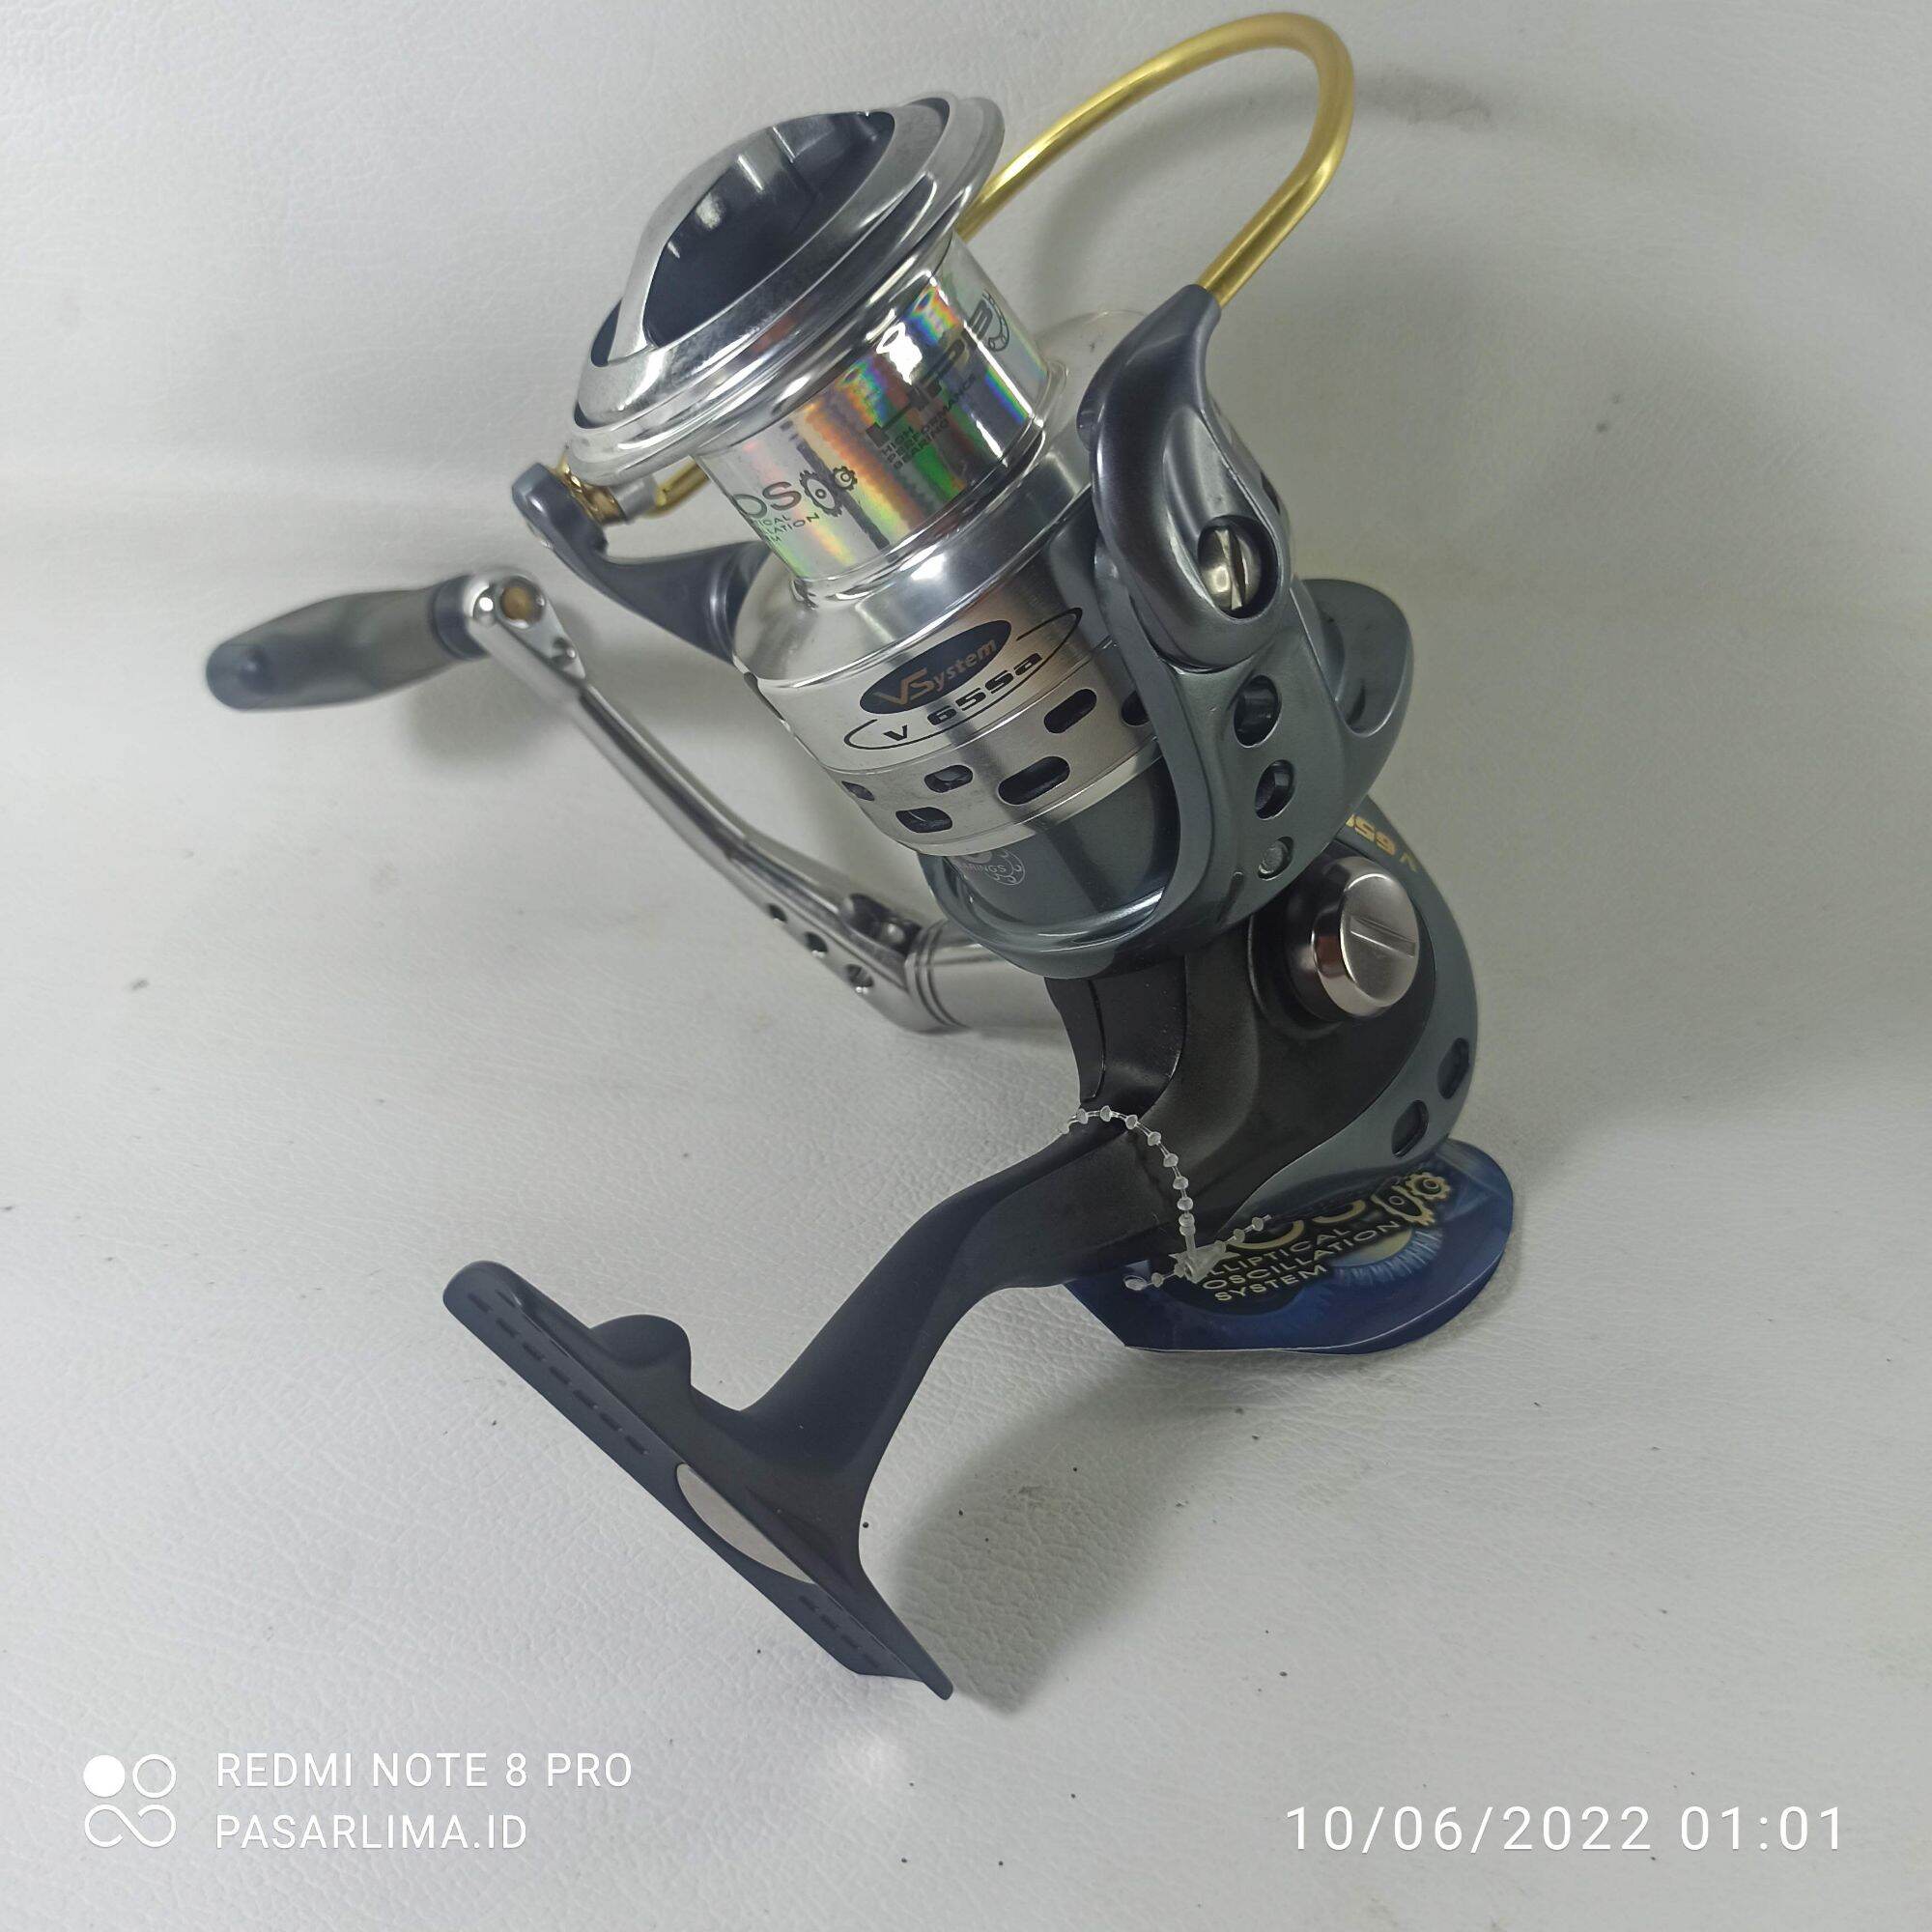 Okuma Vsystem V-65sa reel pancing 16 bearing power handle